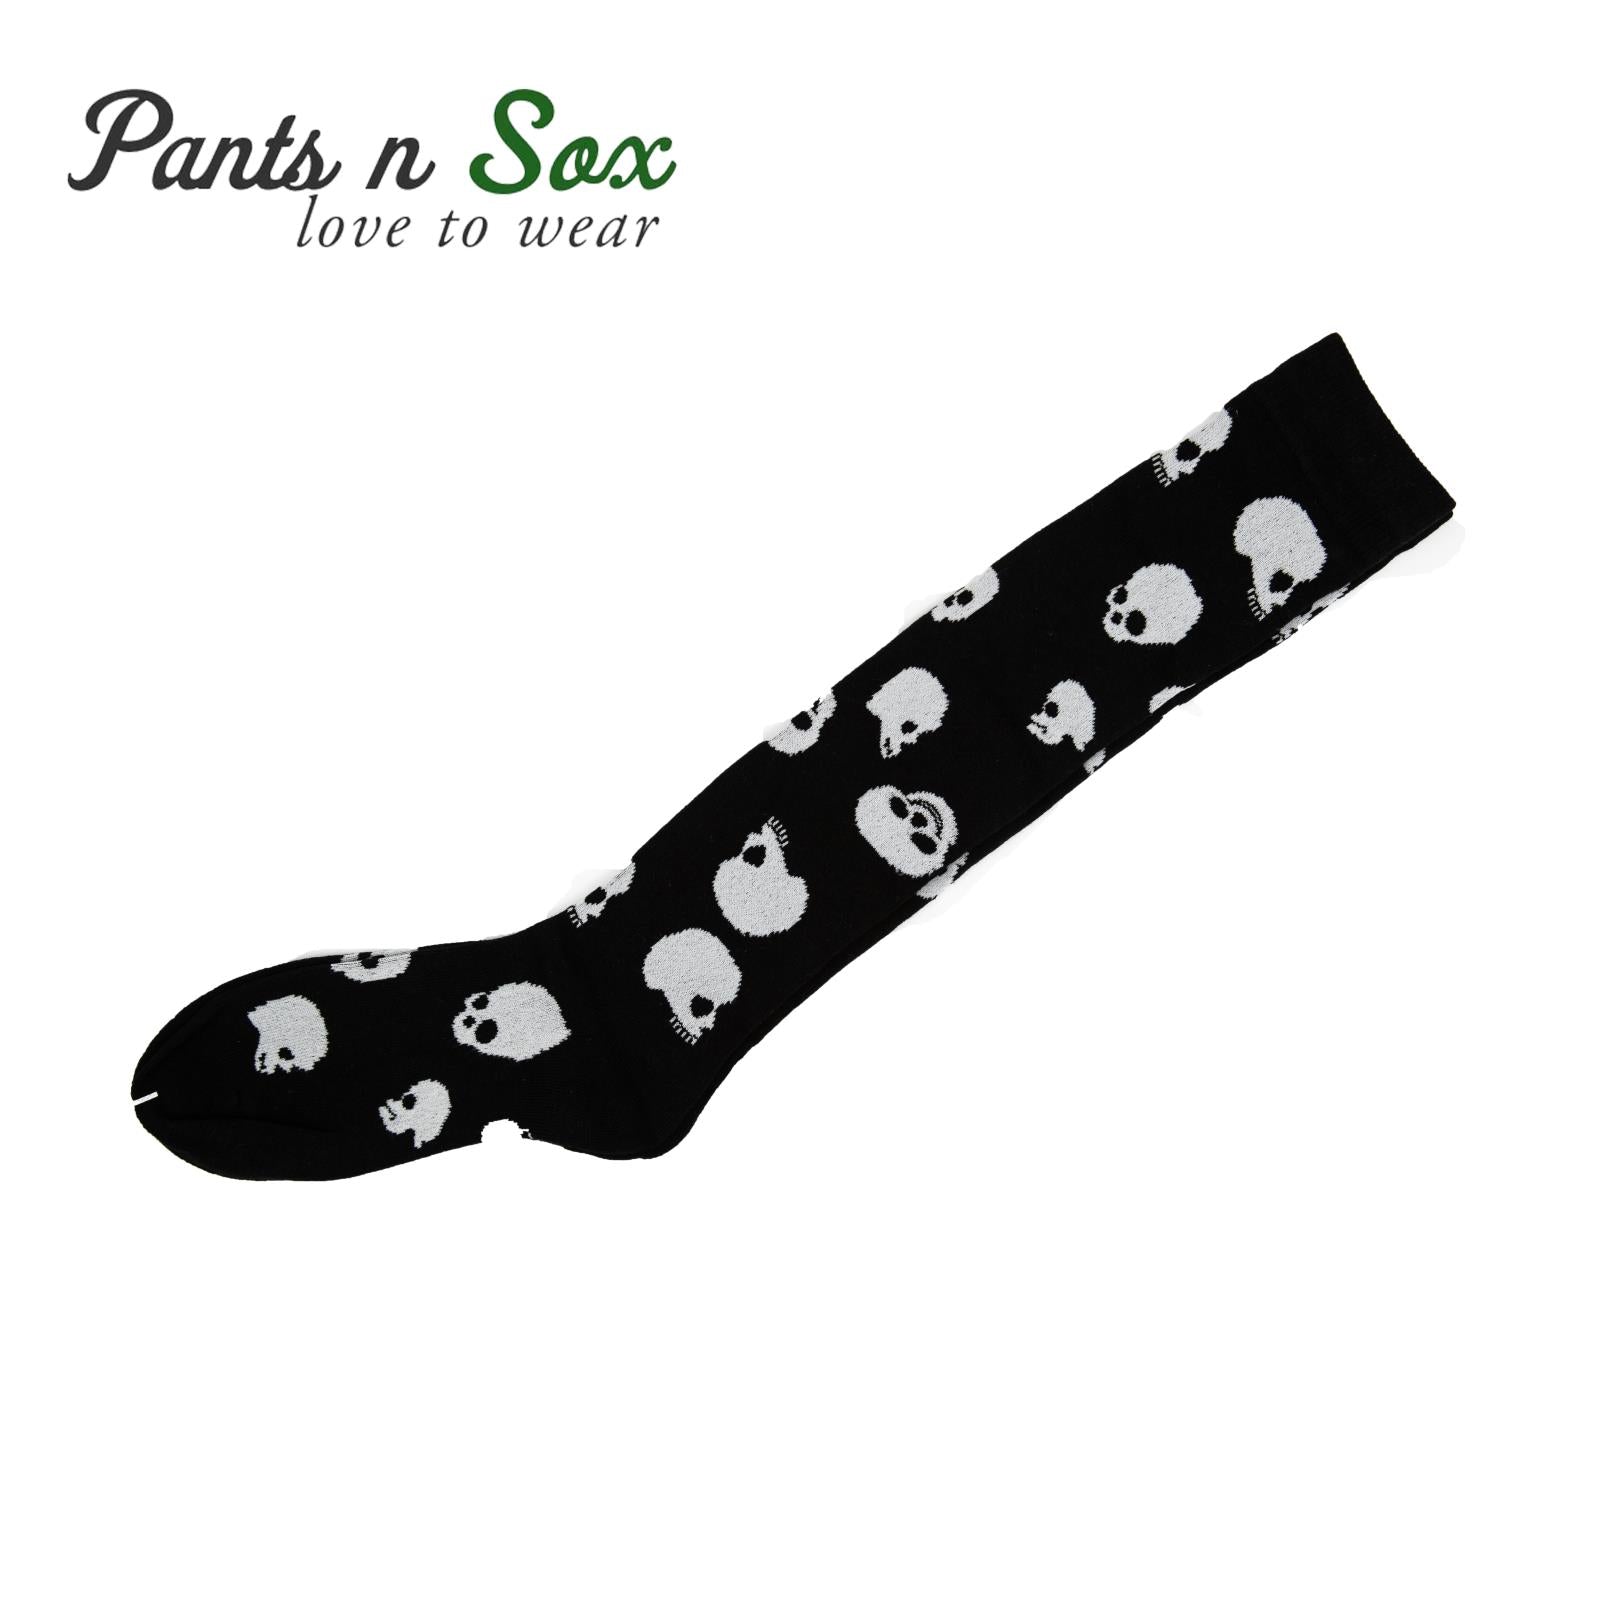 White Skull Black Knee High Socks - Pantsnsox